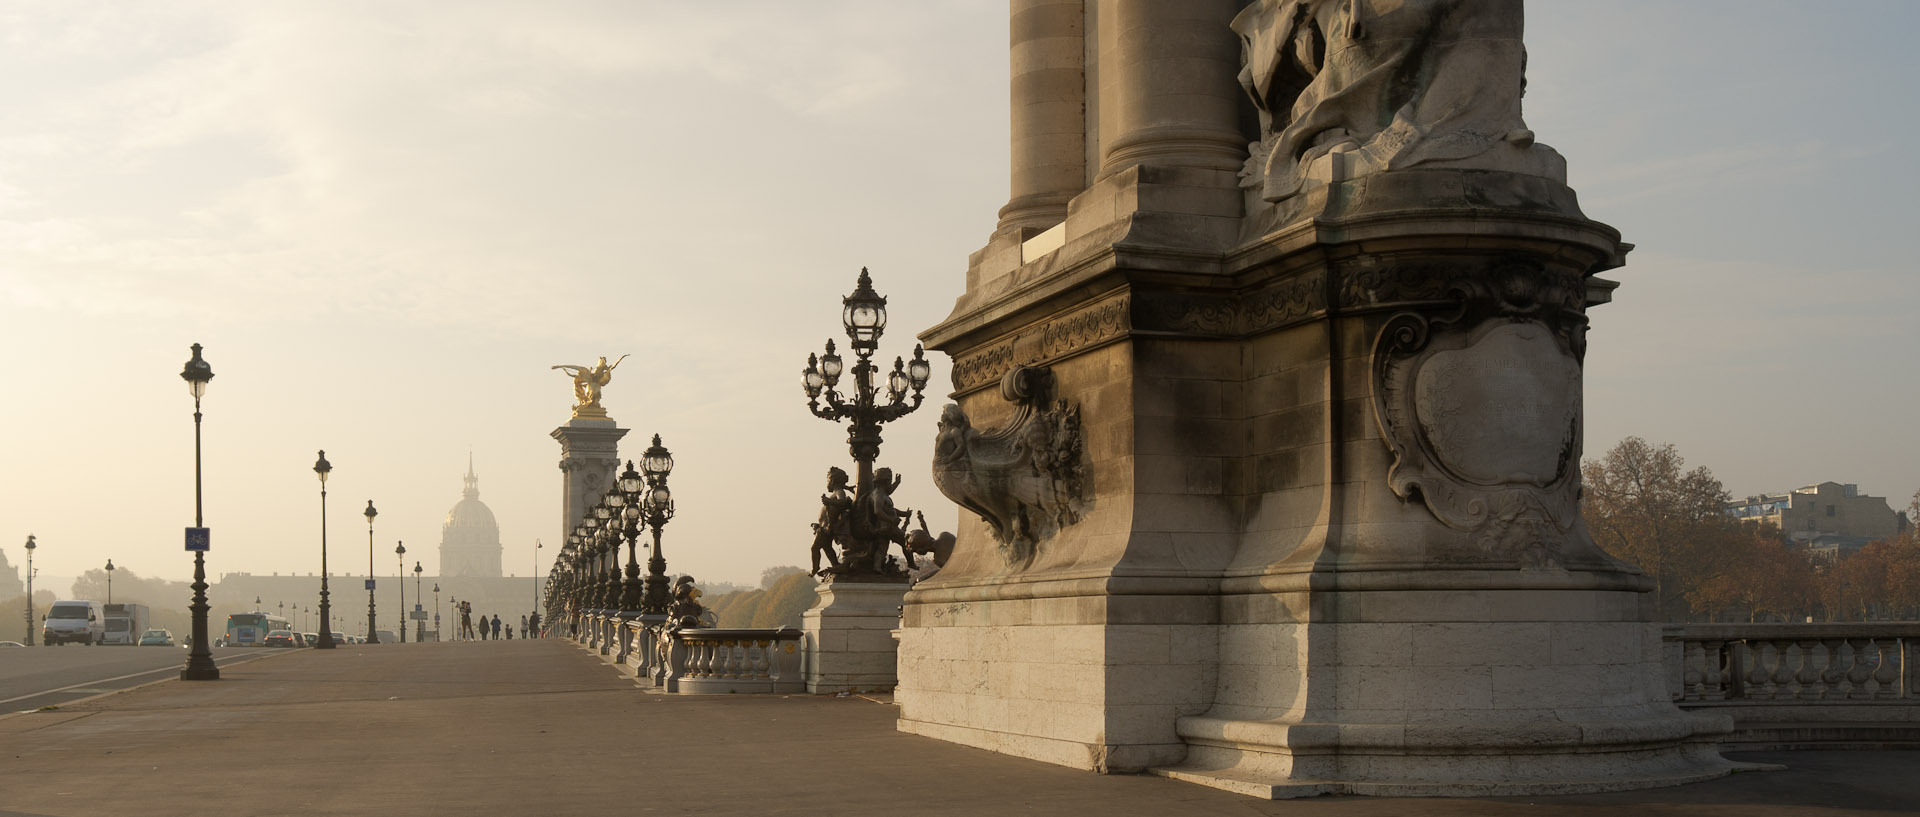 Le pont Alexandre III, à Paris.